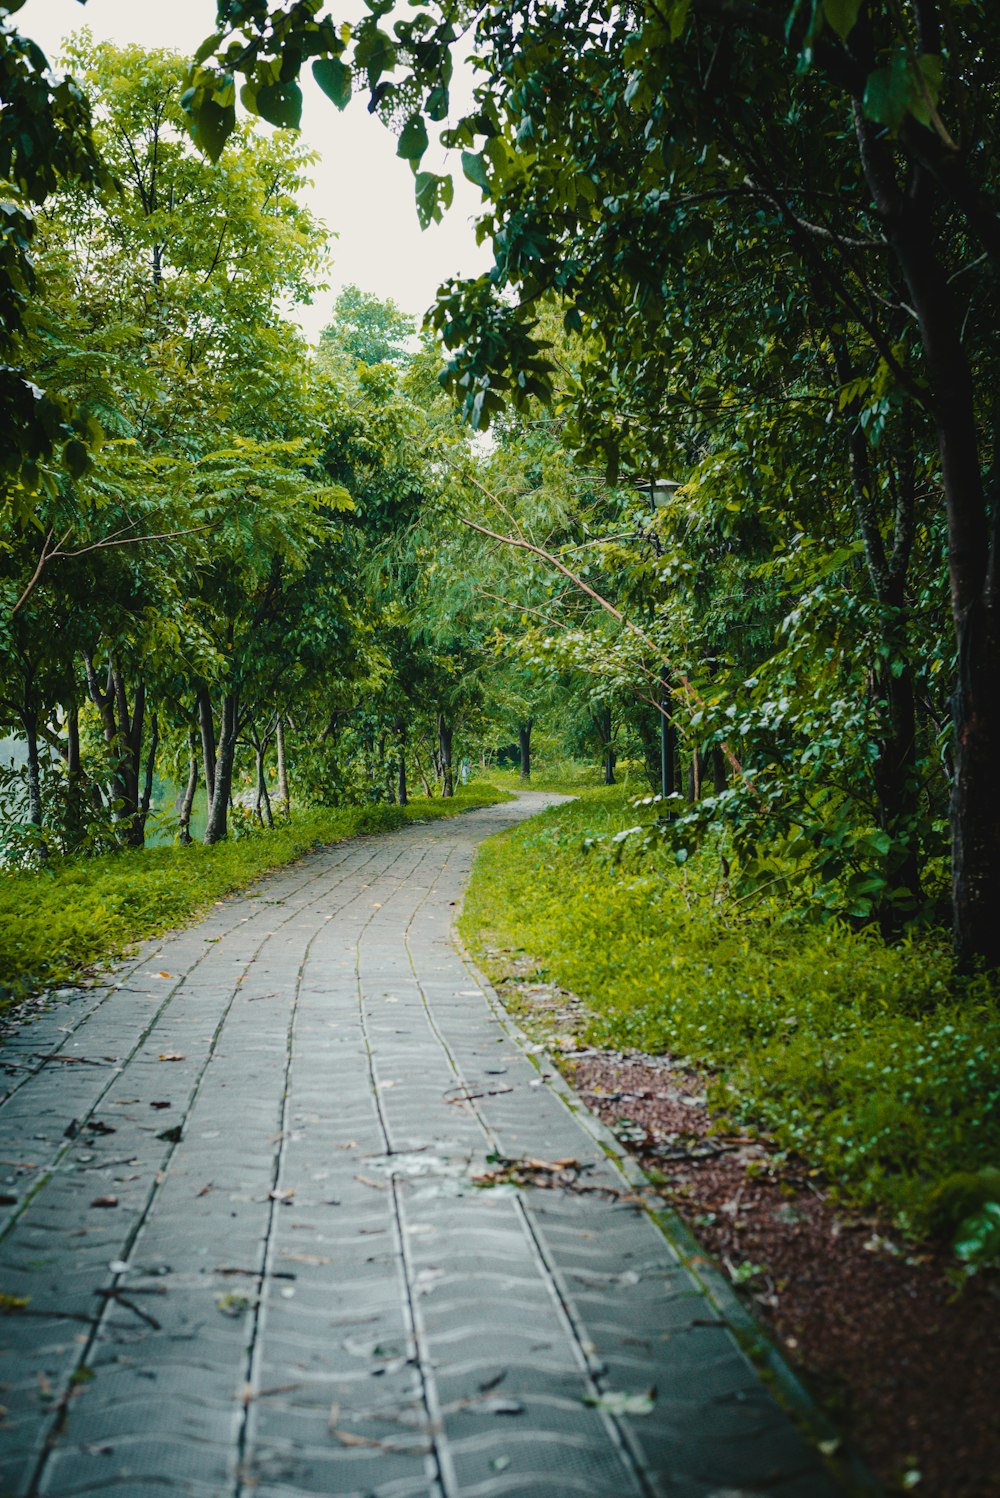 Un camino pavimentado en medio de un frondoso bosque verde